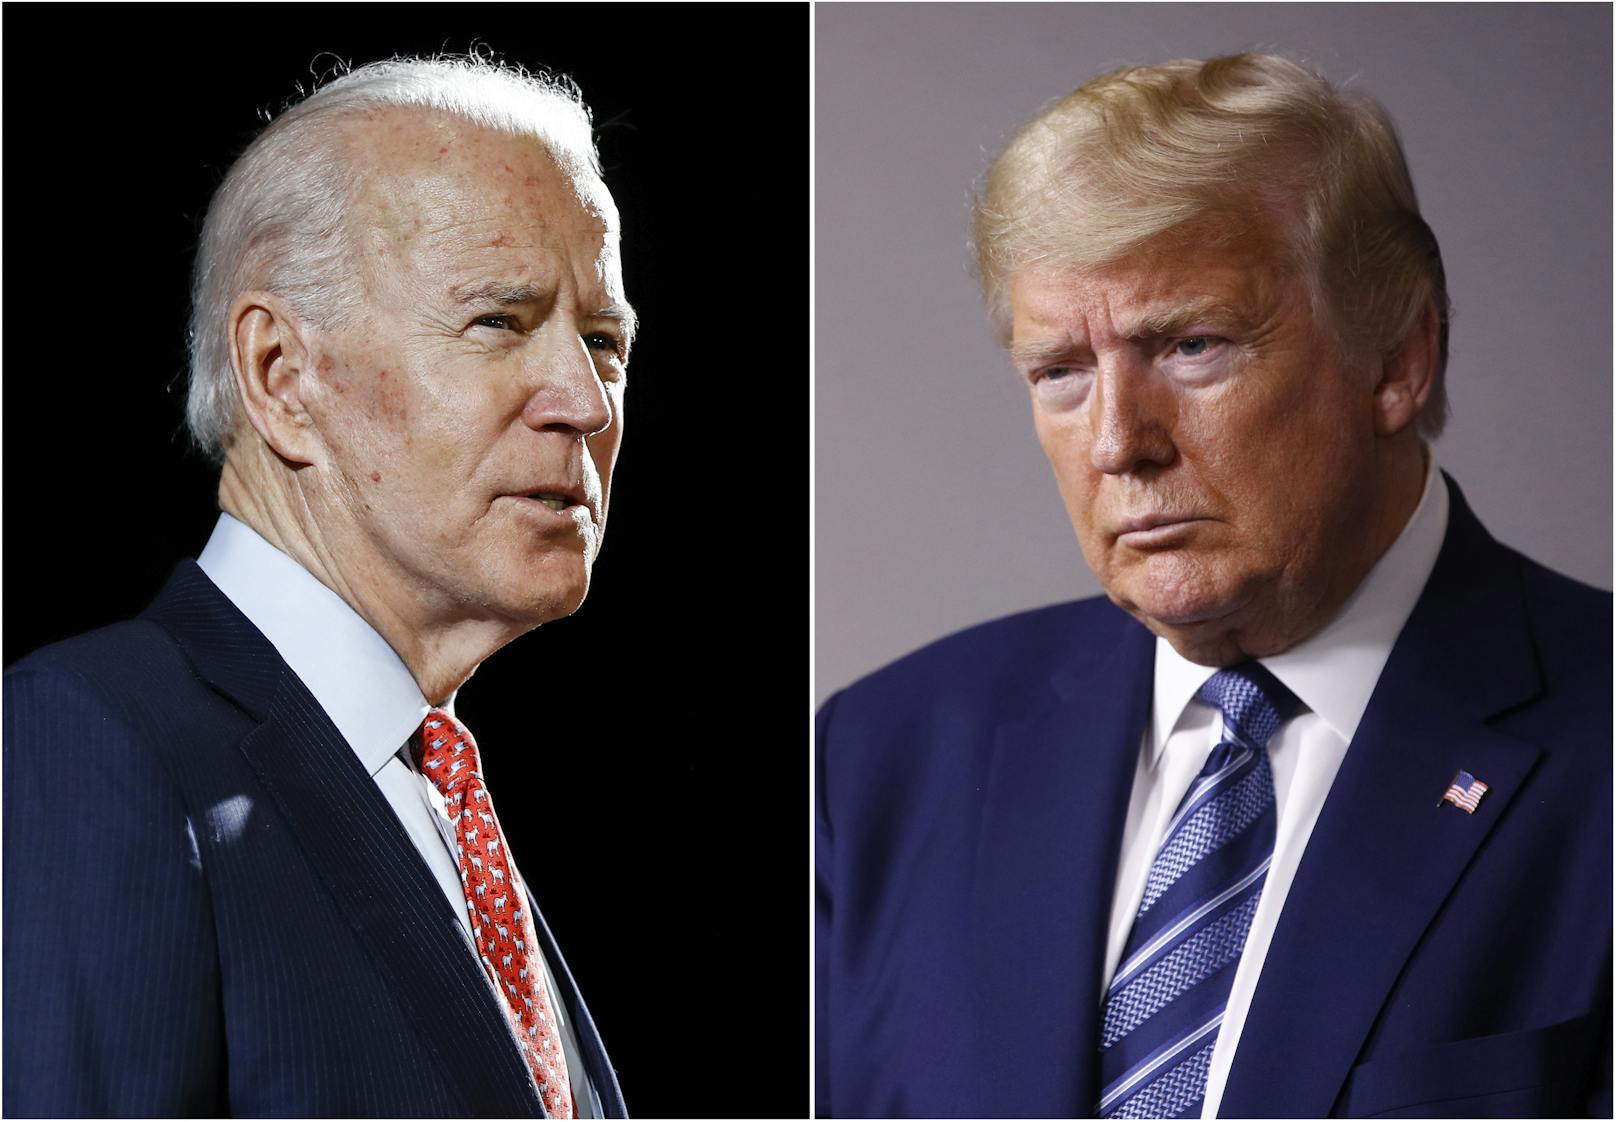 Wer wird zum US-Präsidenten gewählt? Herausforderer Biden oder Amtsinhaber Trump?